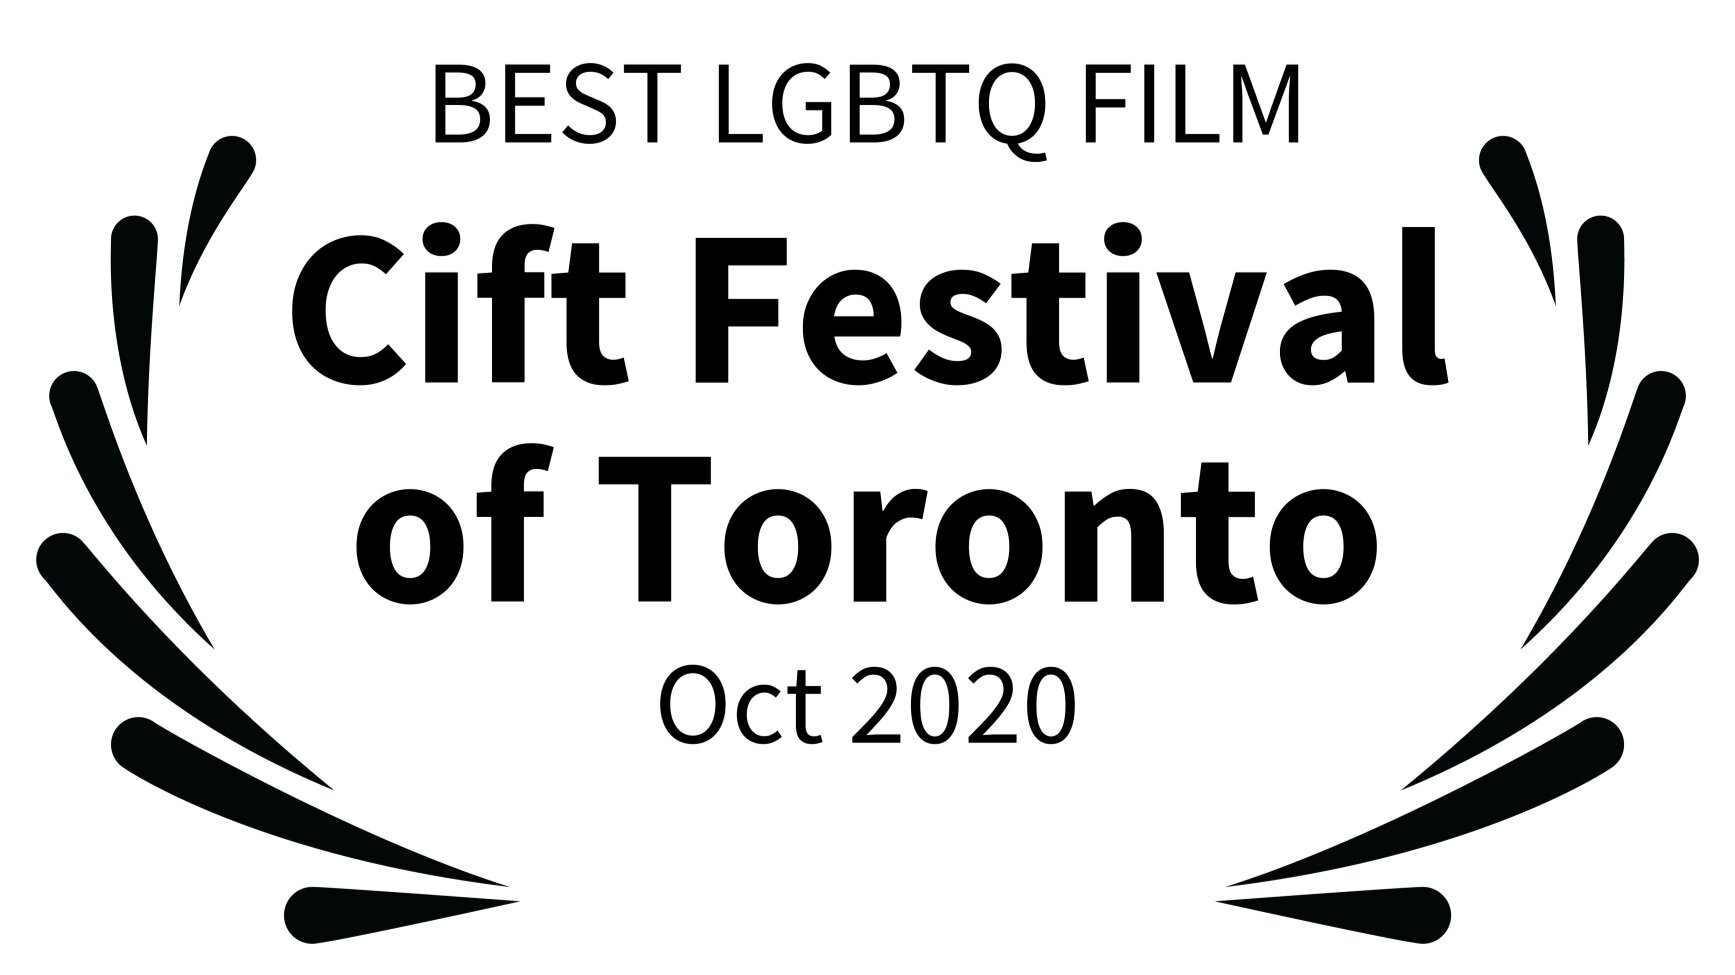 BEST+LGBTQ+FILM+-+Cift+Festival+of+Toronto+-+Oct+2020.jpg